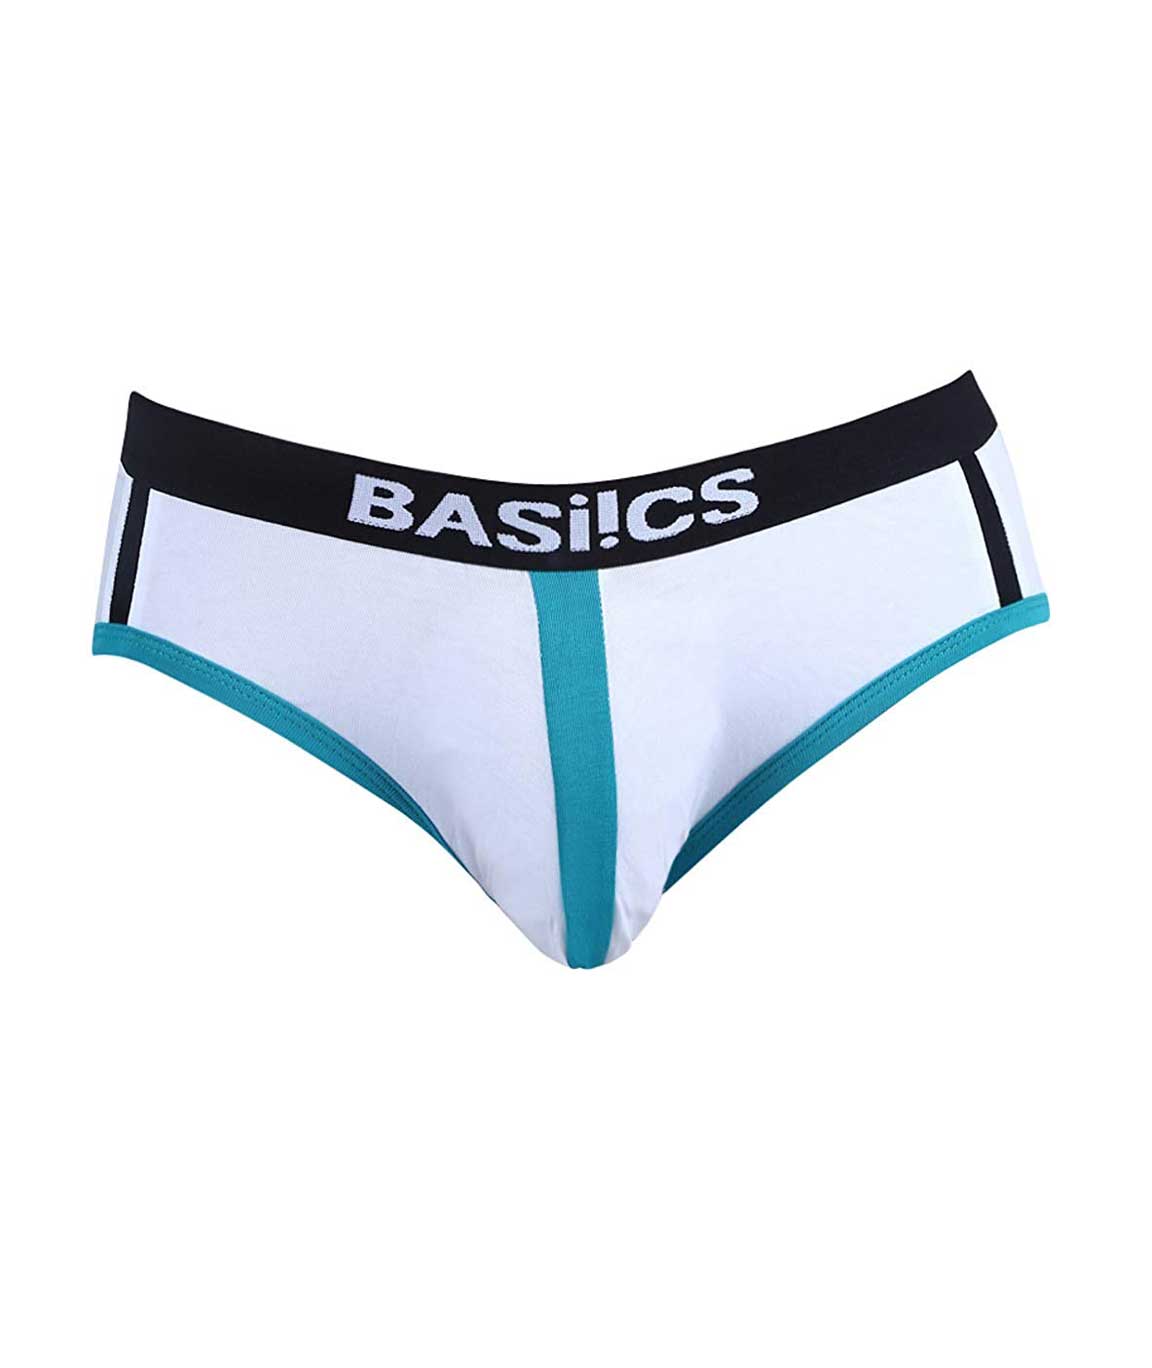 BASIICS by La Intimo Men`s White Cotton Spandex Retro Style Brief